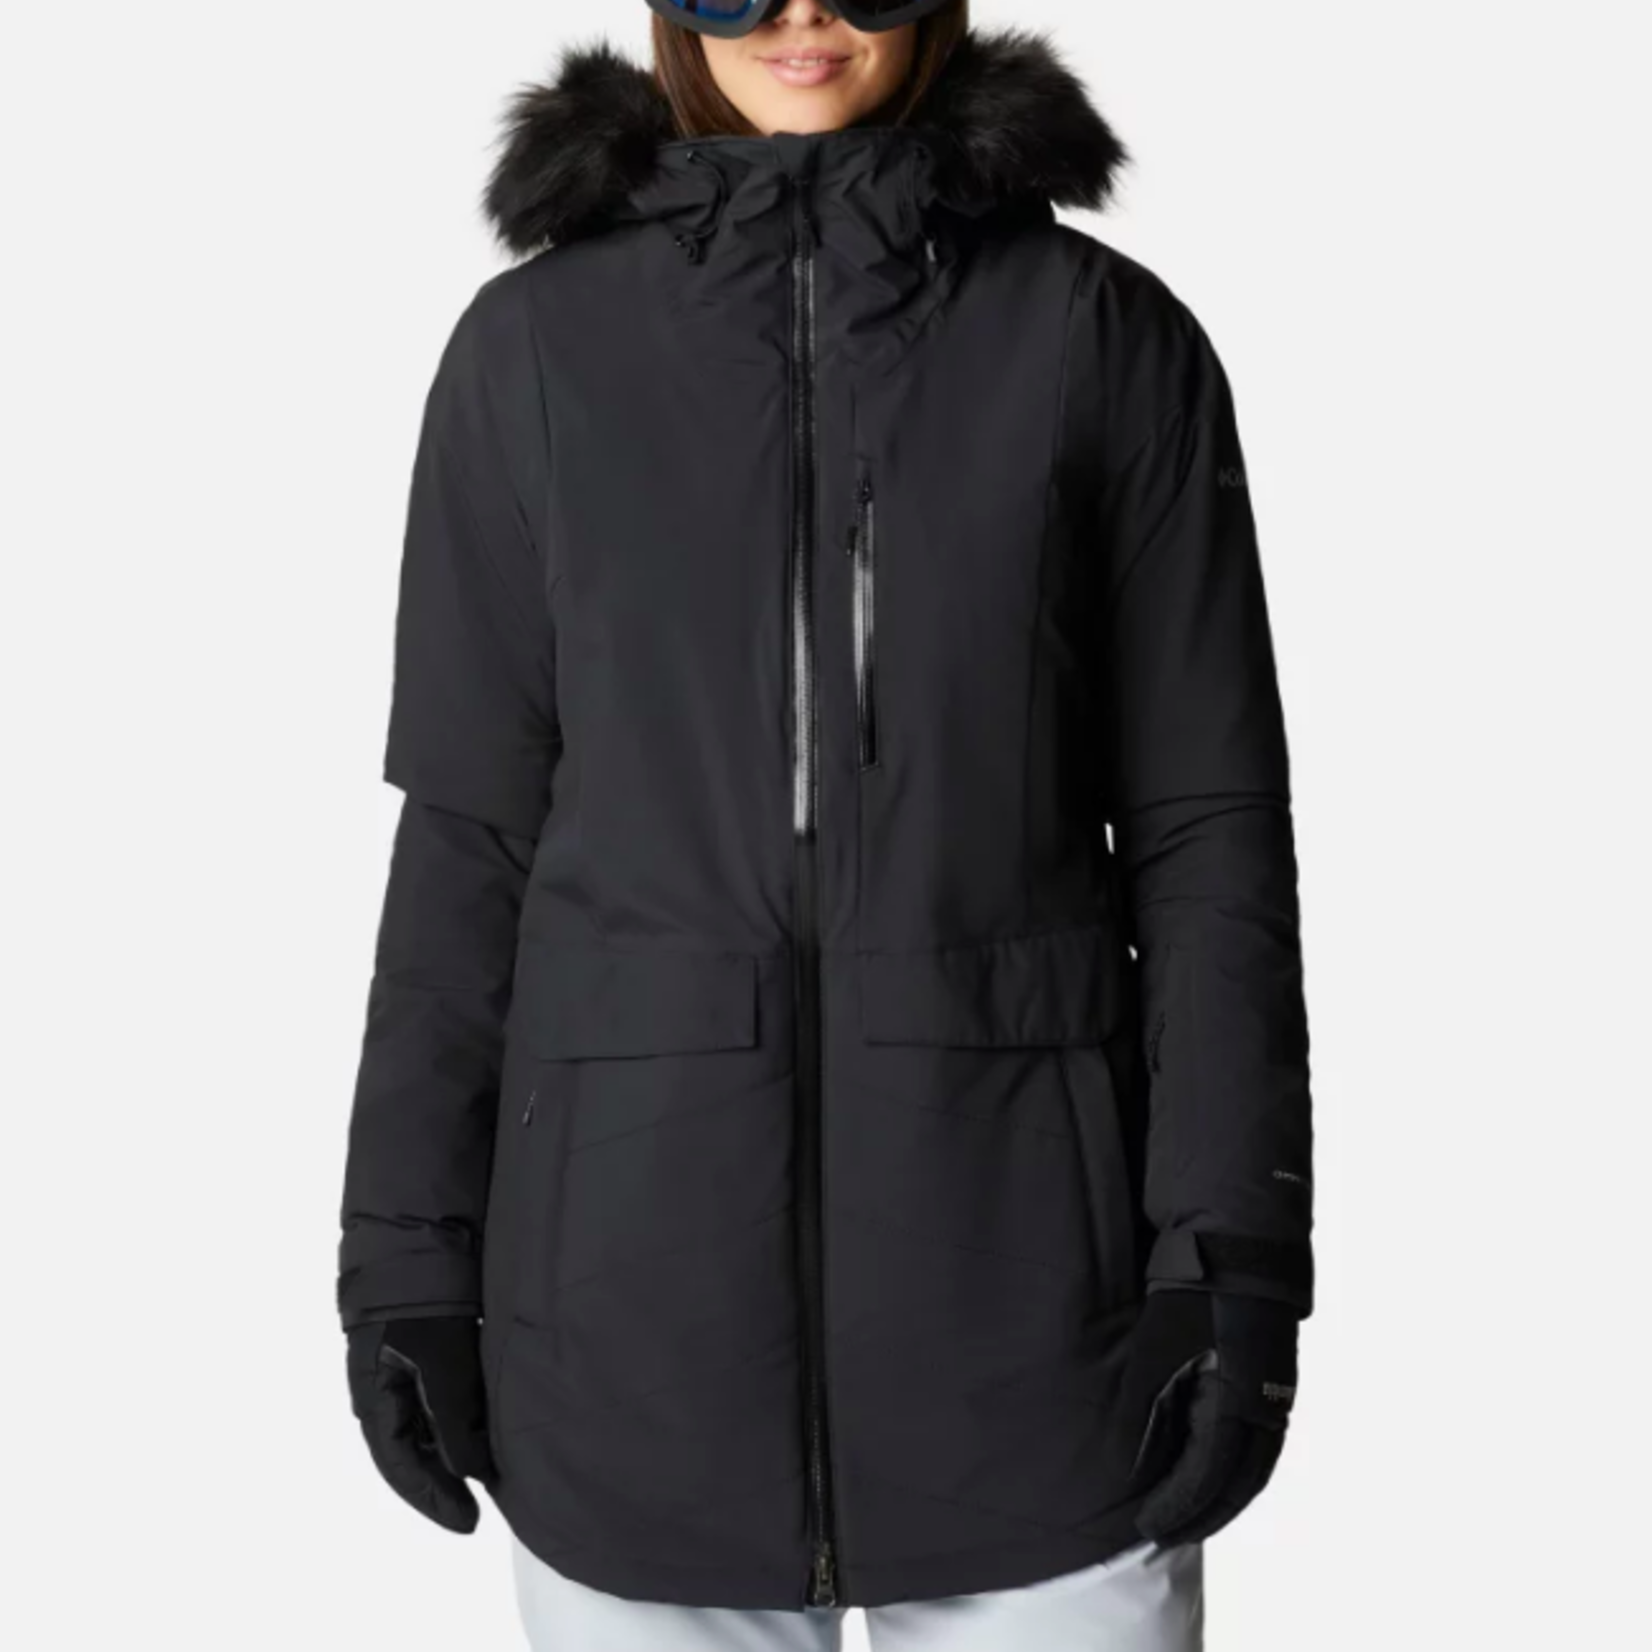 Columbia Columbia Winter Jacket, Mount Bindo II Insulated, Ladies